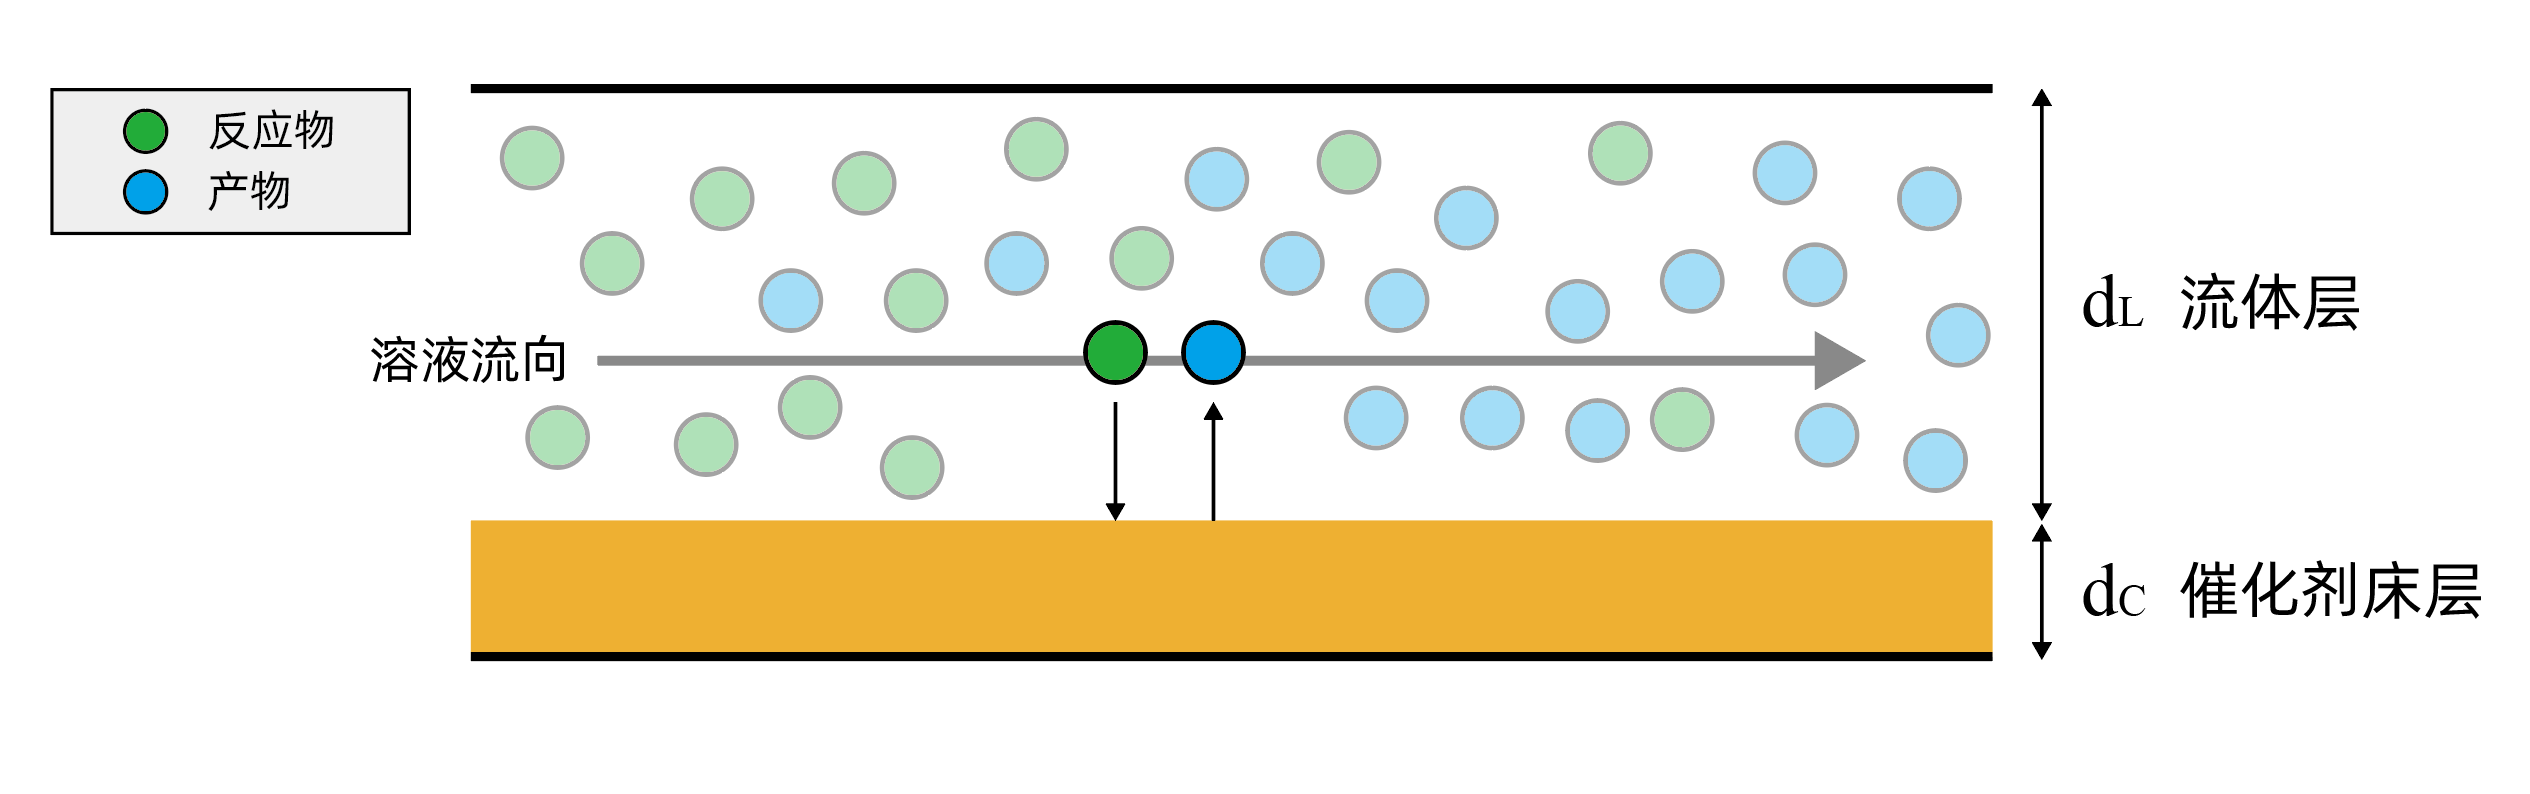 平板反应器充分增大催化剂与反应物的接触面积